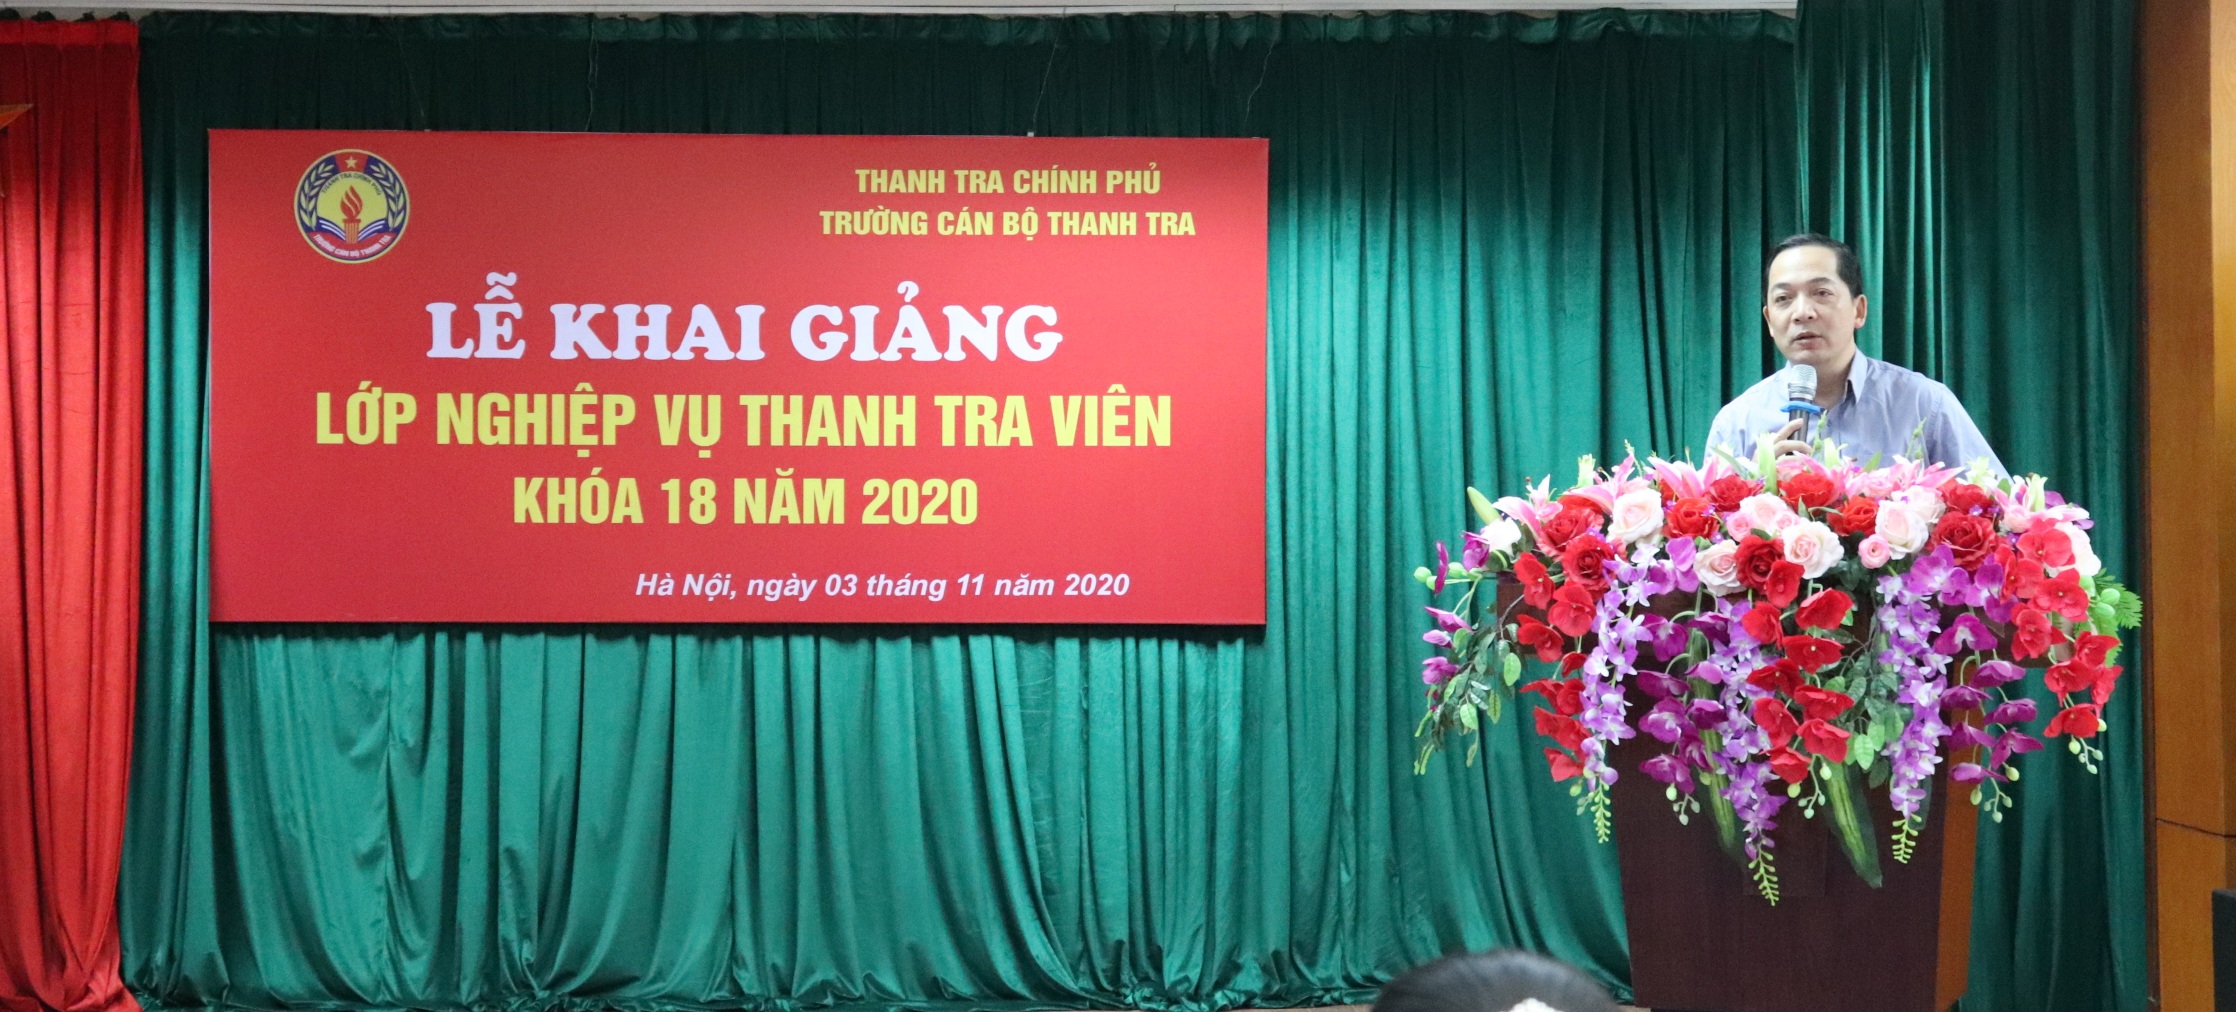 TS Nguyễn Huy Hoàng TTVCC Phó hiệu trưởng trg CBTT phát biểu khai giảng khóa học